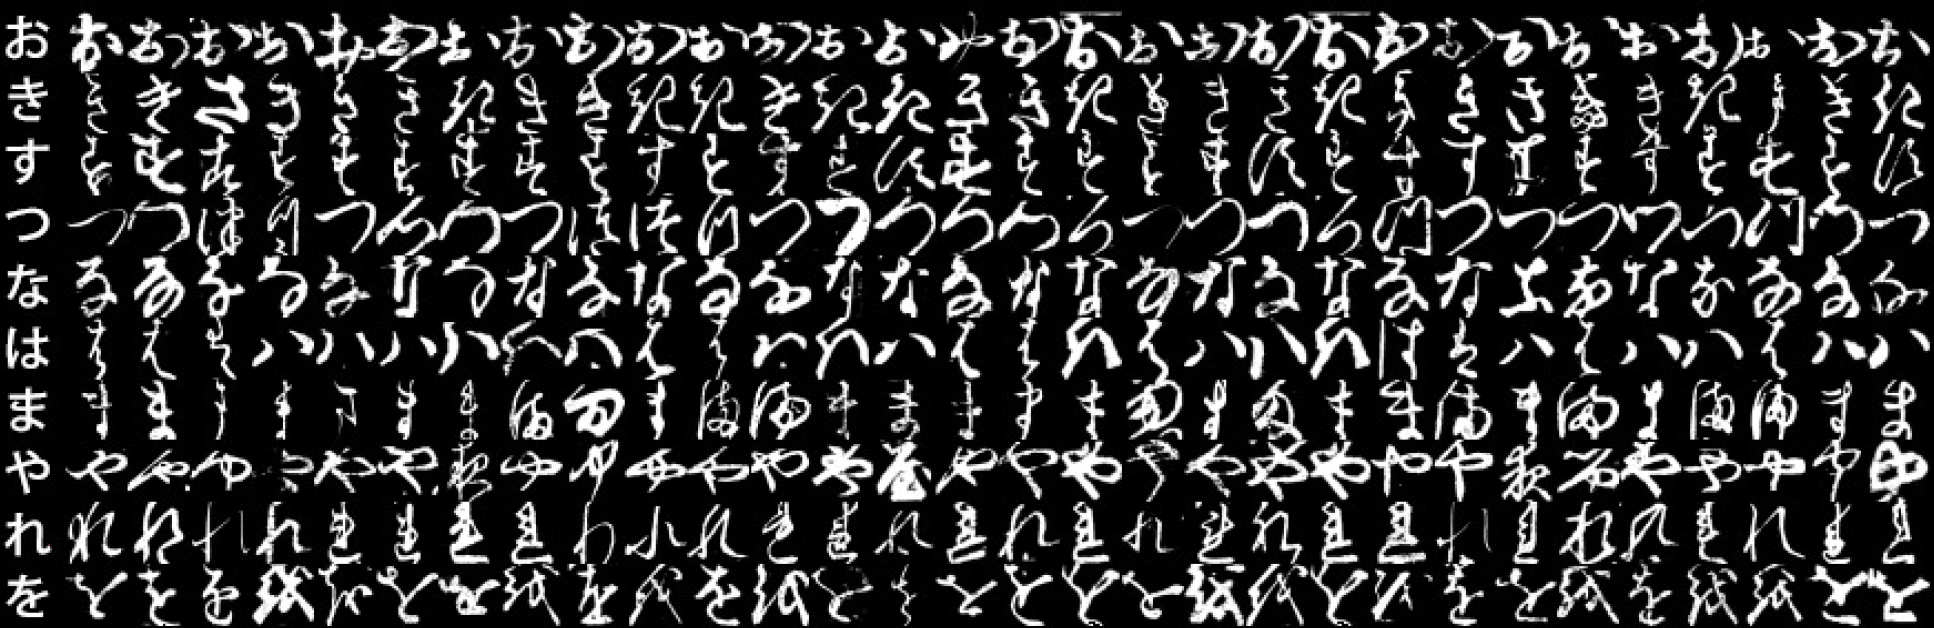 The dataset of Japanese Kuzushiji Characters